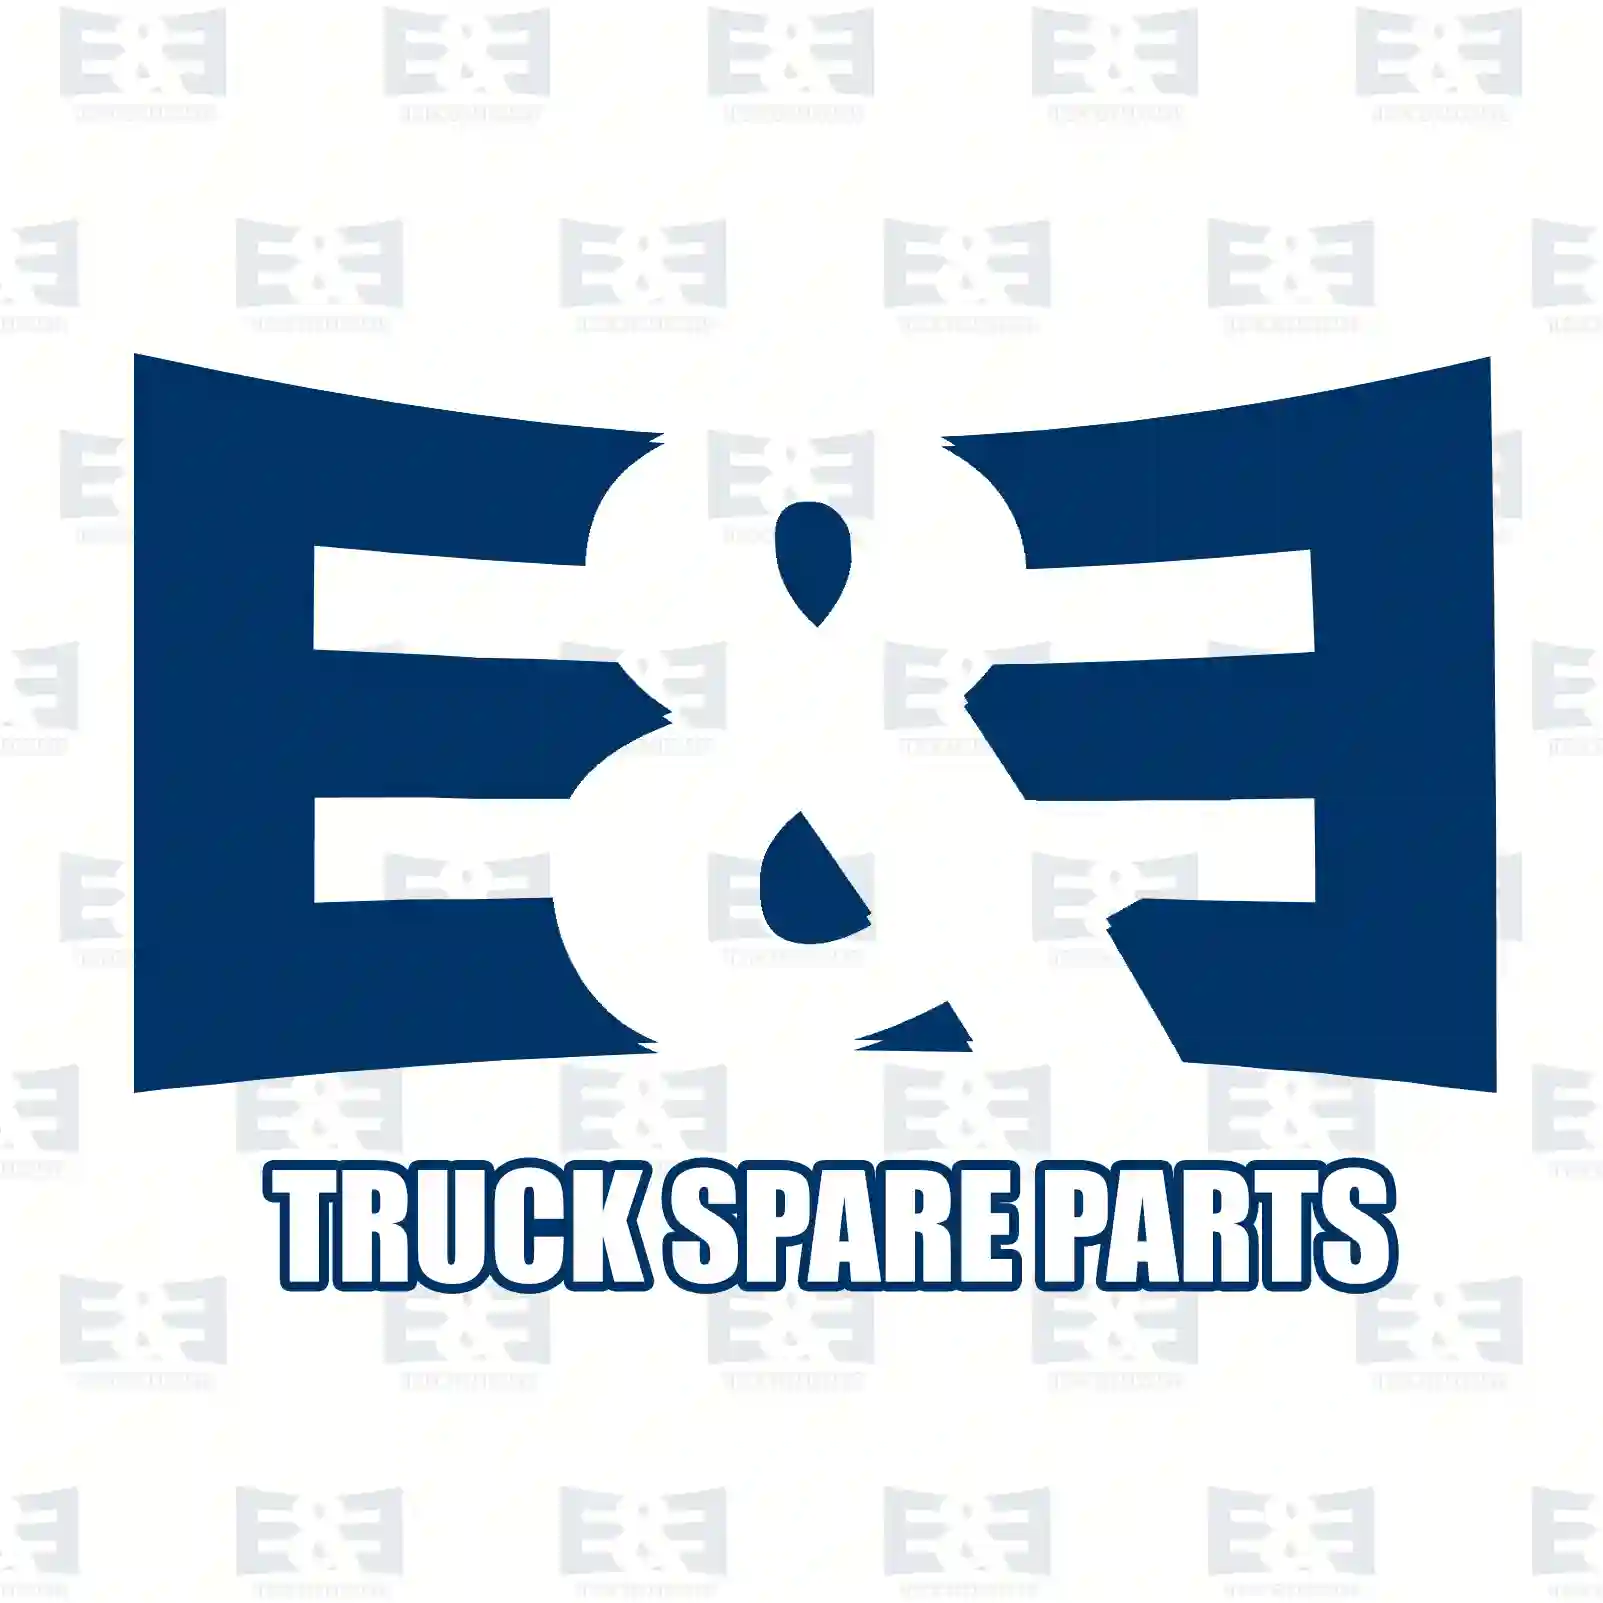 Brake shoe spring, 2E2293712, 21210215, 21210215PK10 ||  2E2293712 E&E Truck Spare Parts | Truck Spare Parts, Auotomotive Spare Parts Brake shoe spring, 2E2293712, 21210215, 21210215PK10 ||  2E2293712 E&E Truck Spare Parts | Truck Spare Parts, Auotomotive Spare Parts